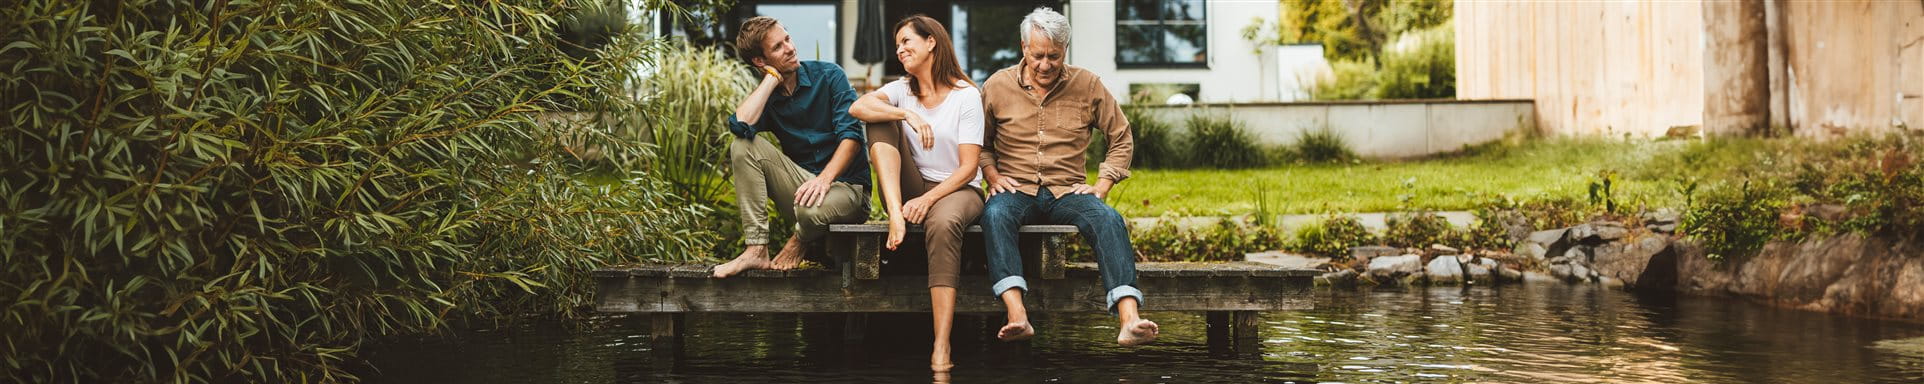  Trois personnes sont assises sur une jetée devant une mare devant la maison.